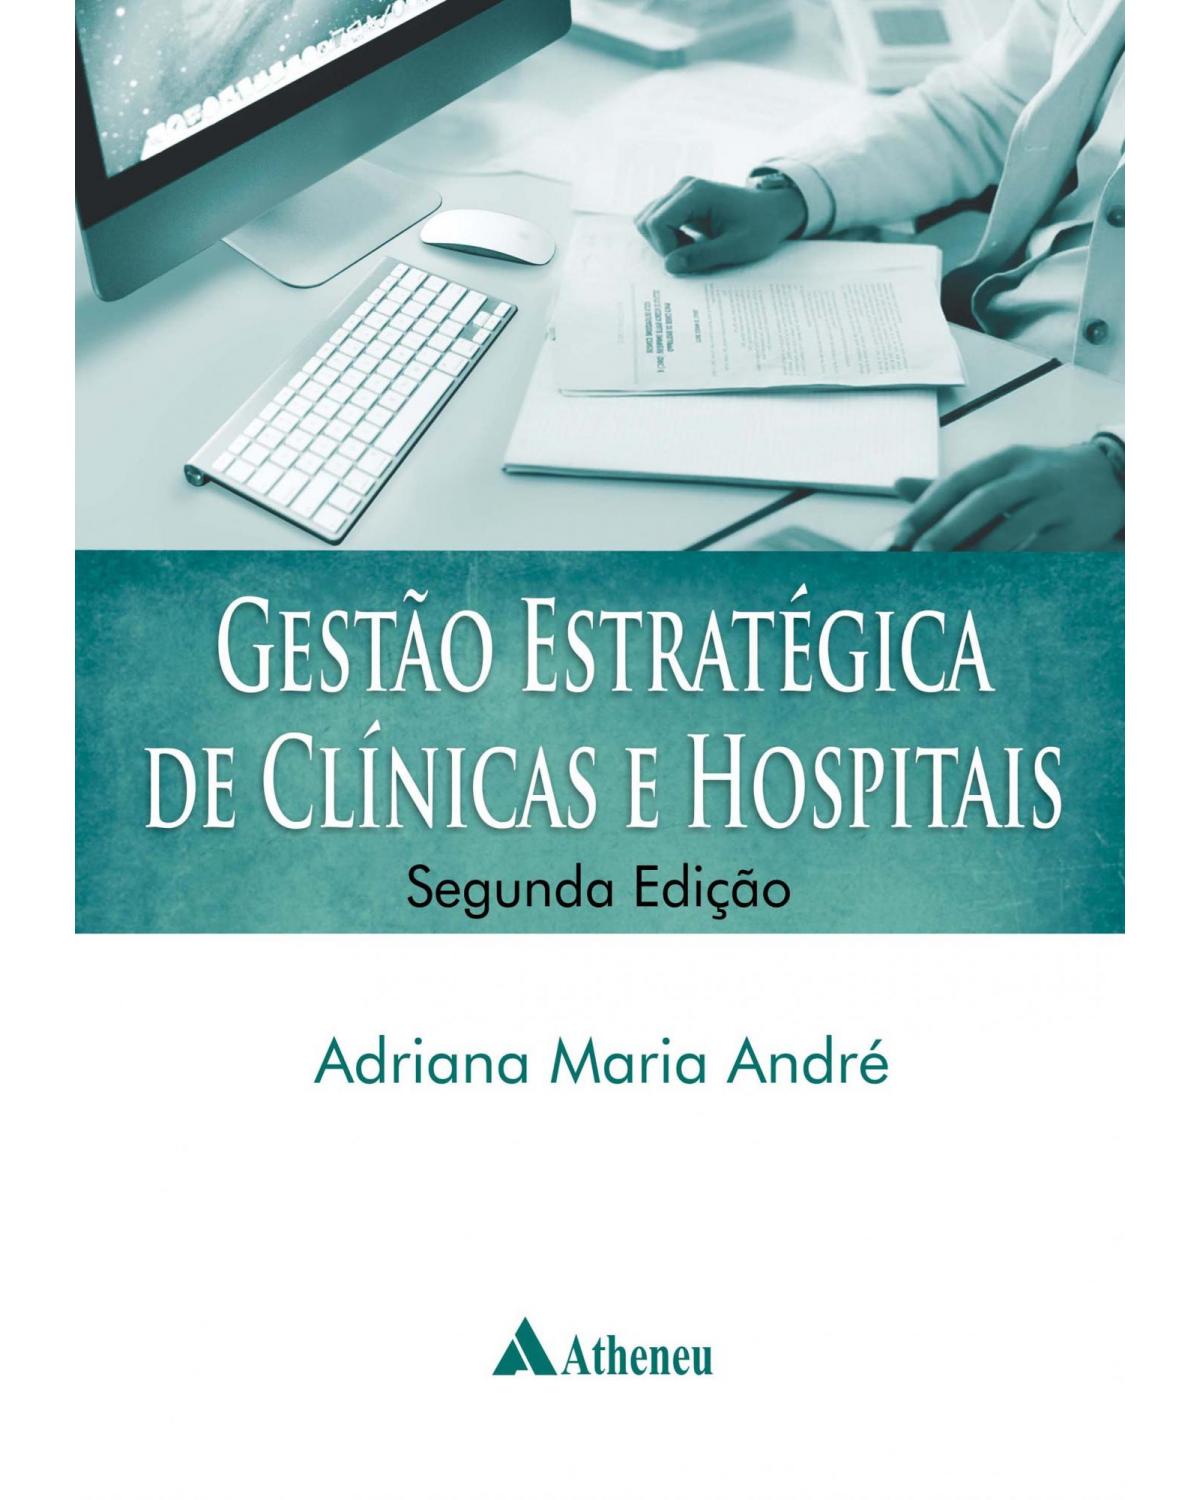 Gestão estratégica de clínicas e hospitais - 2ª Edição | 2014